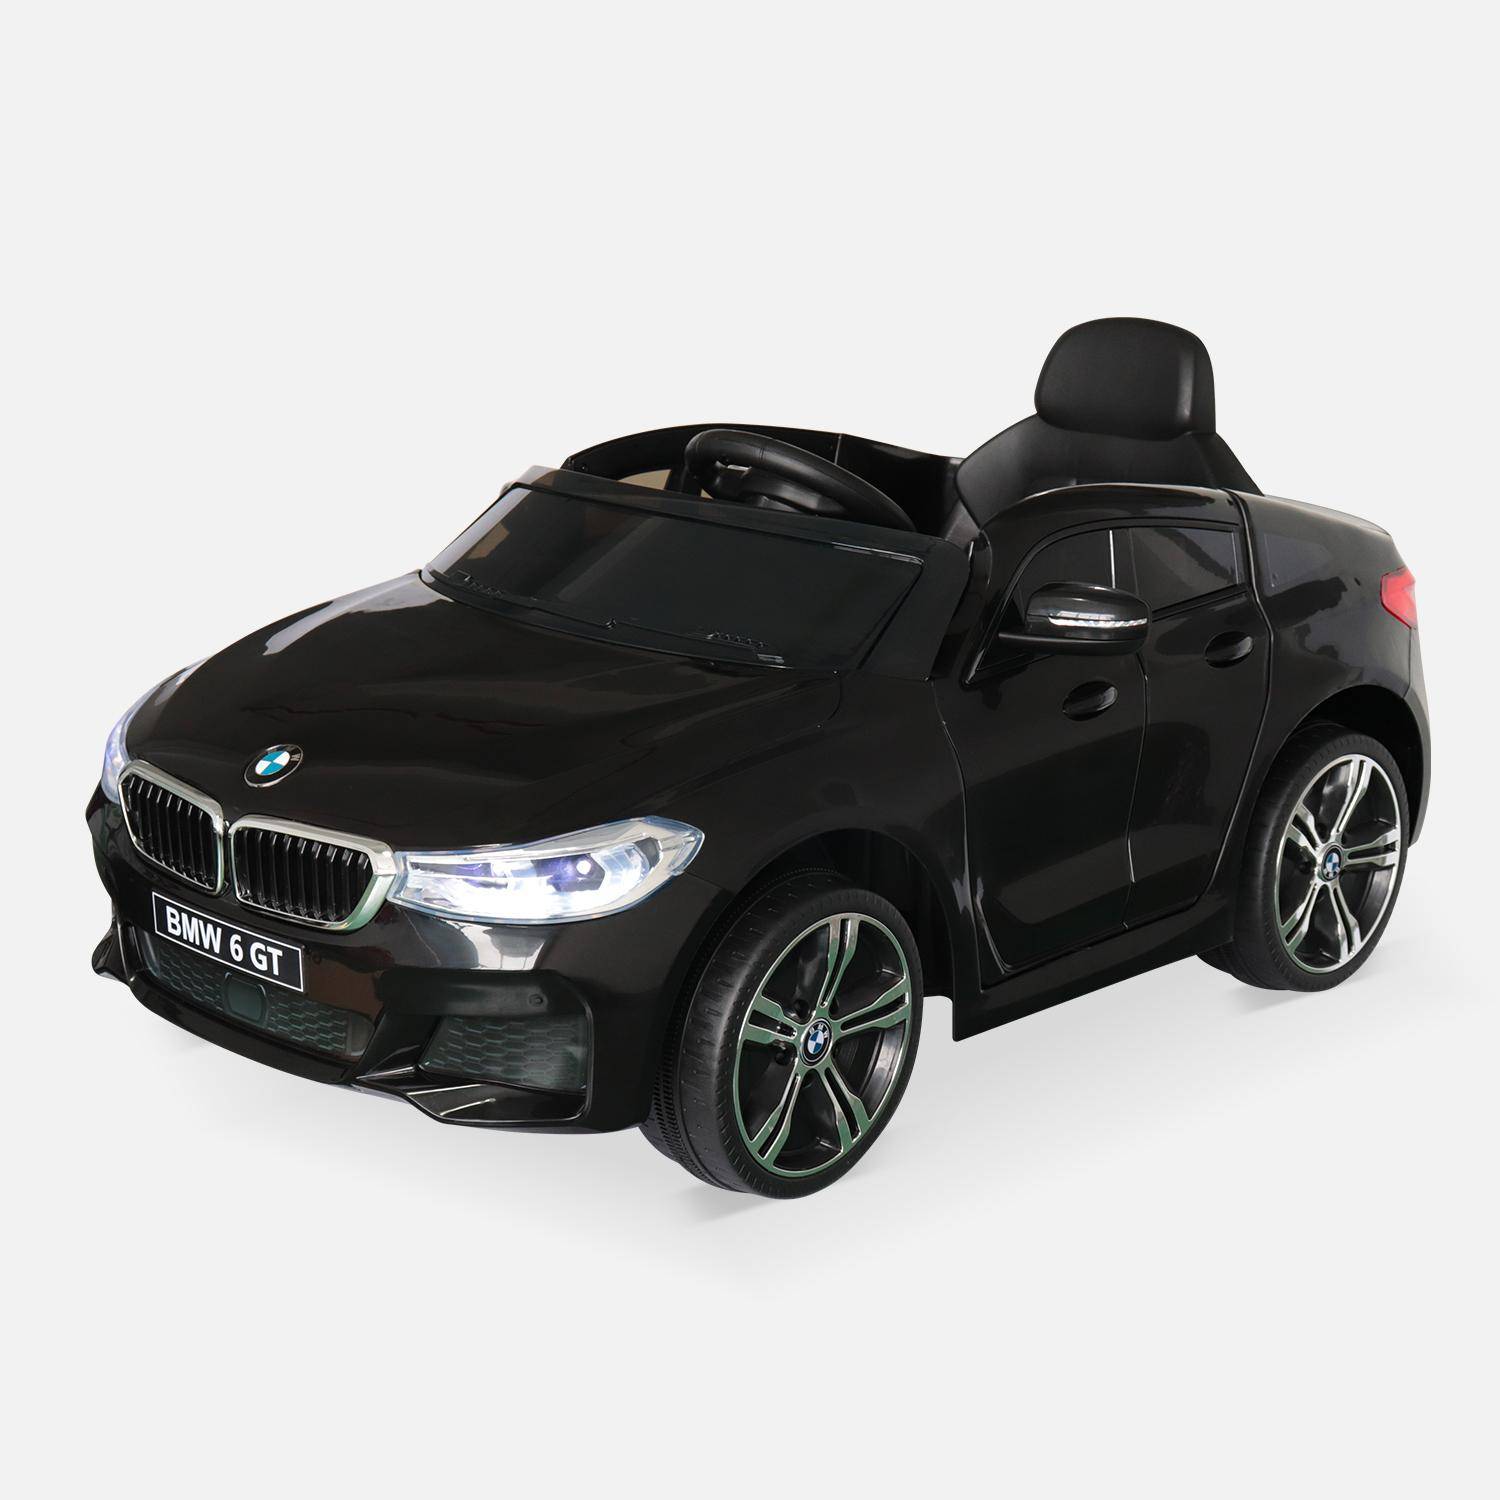 BMW Série 6 GT noire, voiture électrique pour enfants 12V 4 Ah, 1 place, avec autoradio et télécommande Photo2